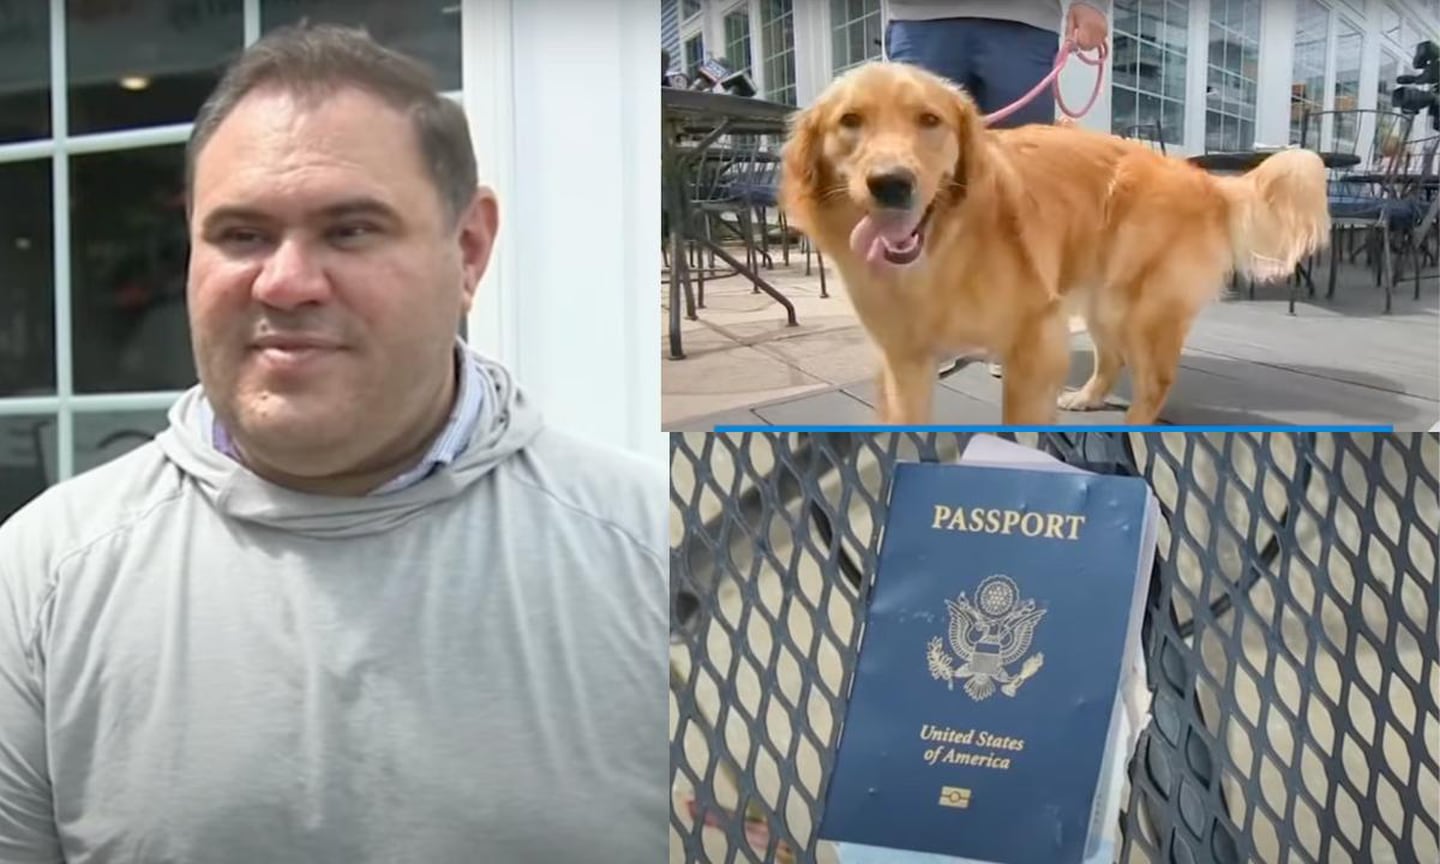 Hombre vive en Estados Unidos y se va a casar en Ital, pero está preocupado porque el perro se le comió el pasaporte. Boda está programada para el 31 de agosto